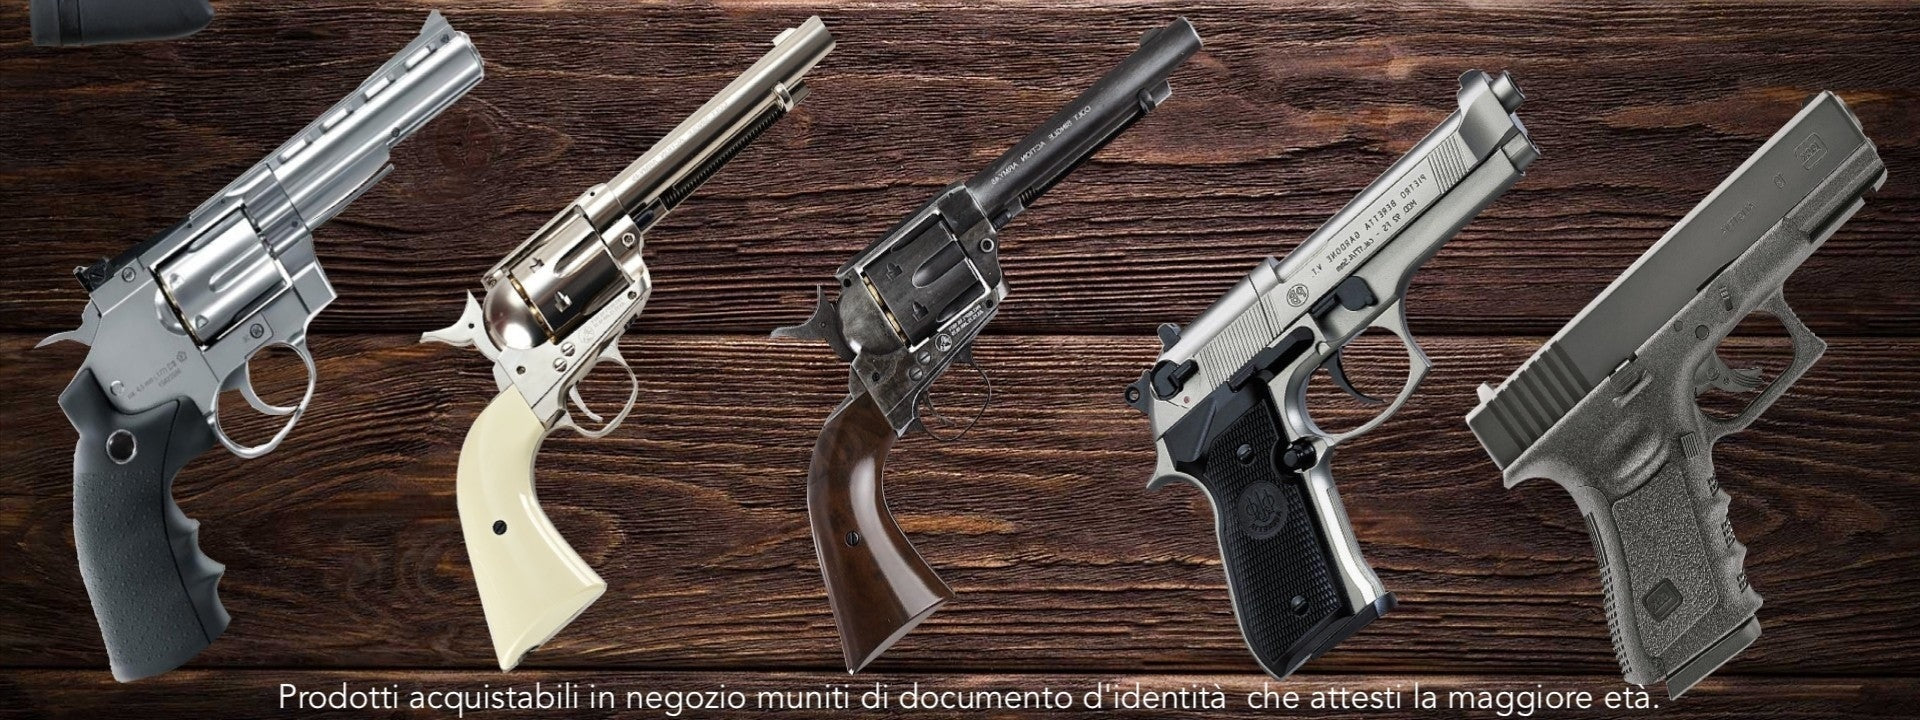 Manette - armeria,armi nuove e usate, accessori armi,coltelleria